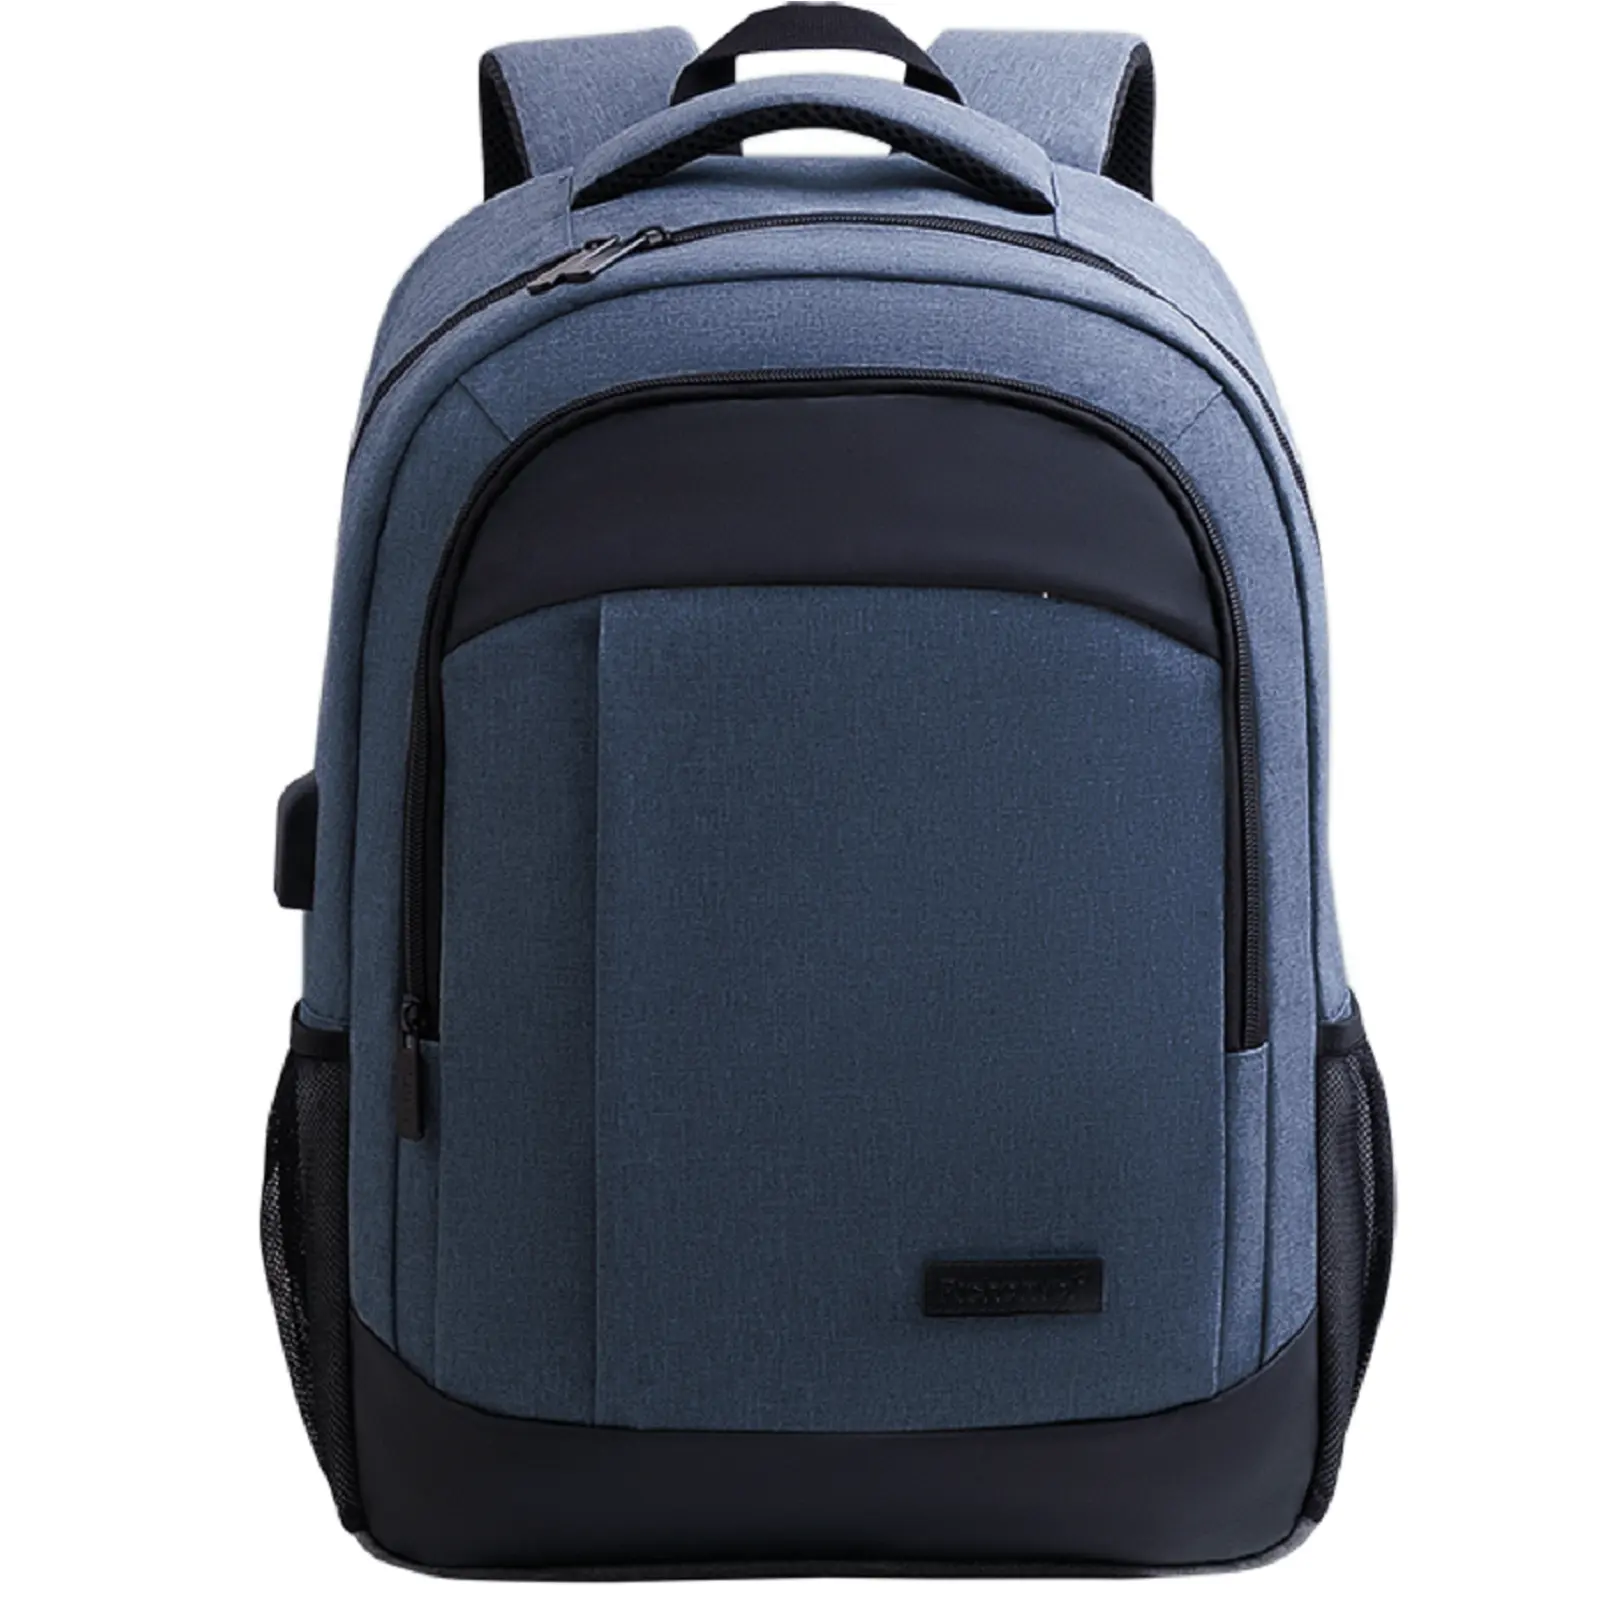 الجملة شعار مخصص دائم الأعمال السفر للماء حقيبة مدرسية رخيصة 17.3 بوصة حقيبة ظهر كمبيوتر محمول للطالب مع USB